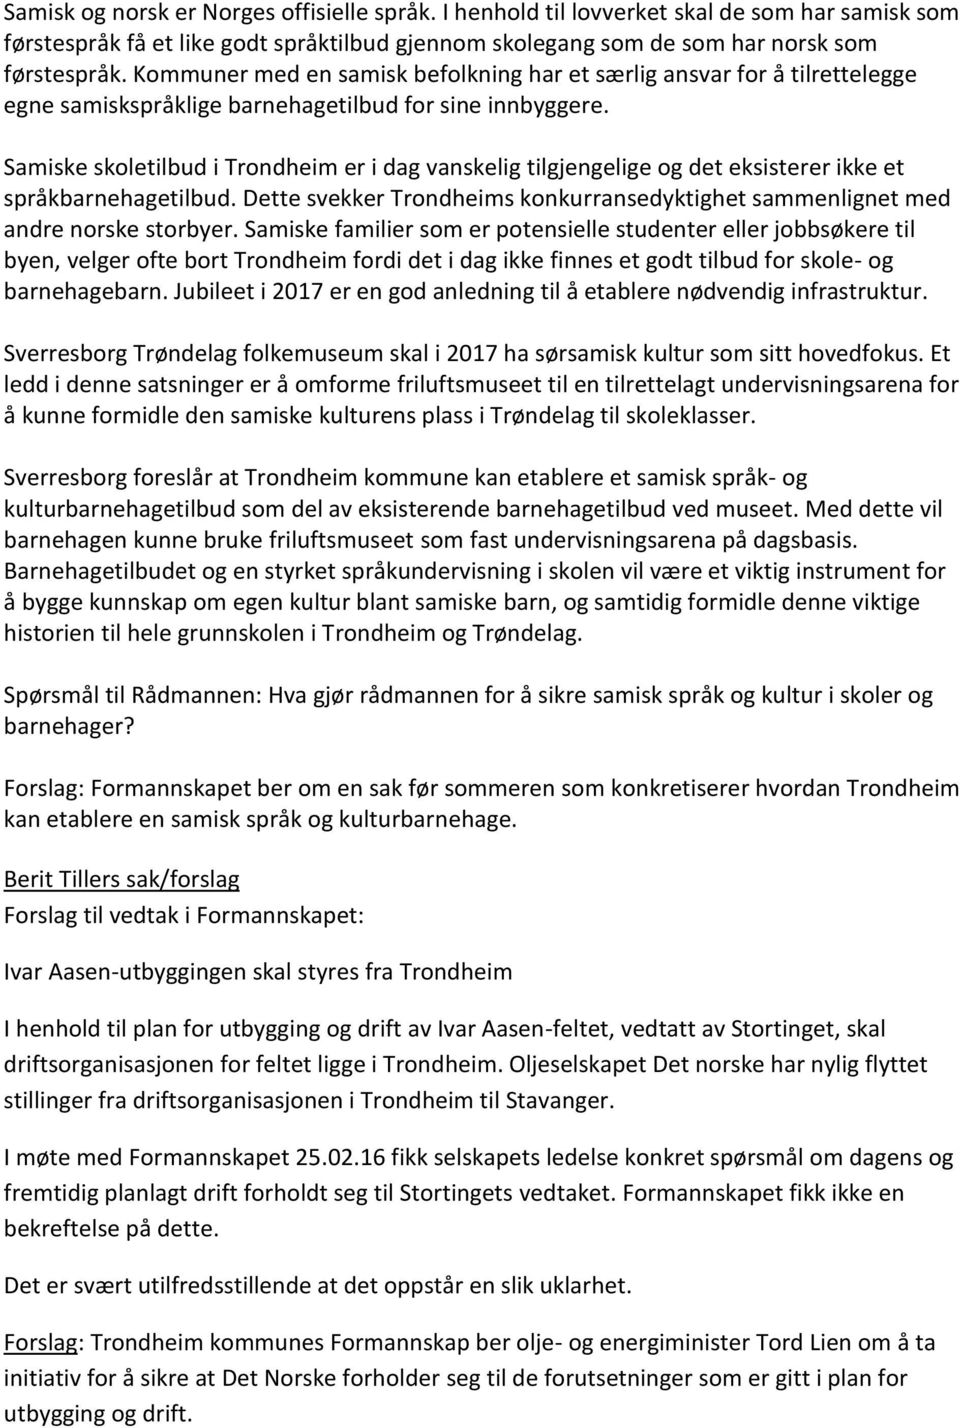 Samiske skoletilbud i Trondheim er i dag vanskelig tilgjengelige og det eksisterer ikke et språkbarnehagetilbud. Dette svekker Trondheims konkurransedyktighet sammenlignet med andre norske storbyer.